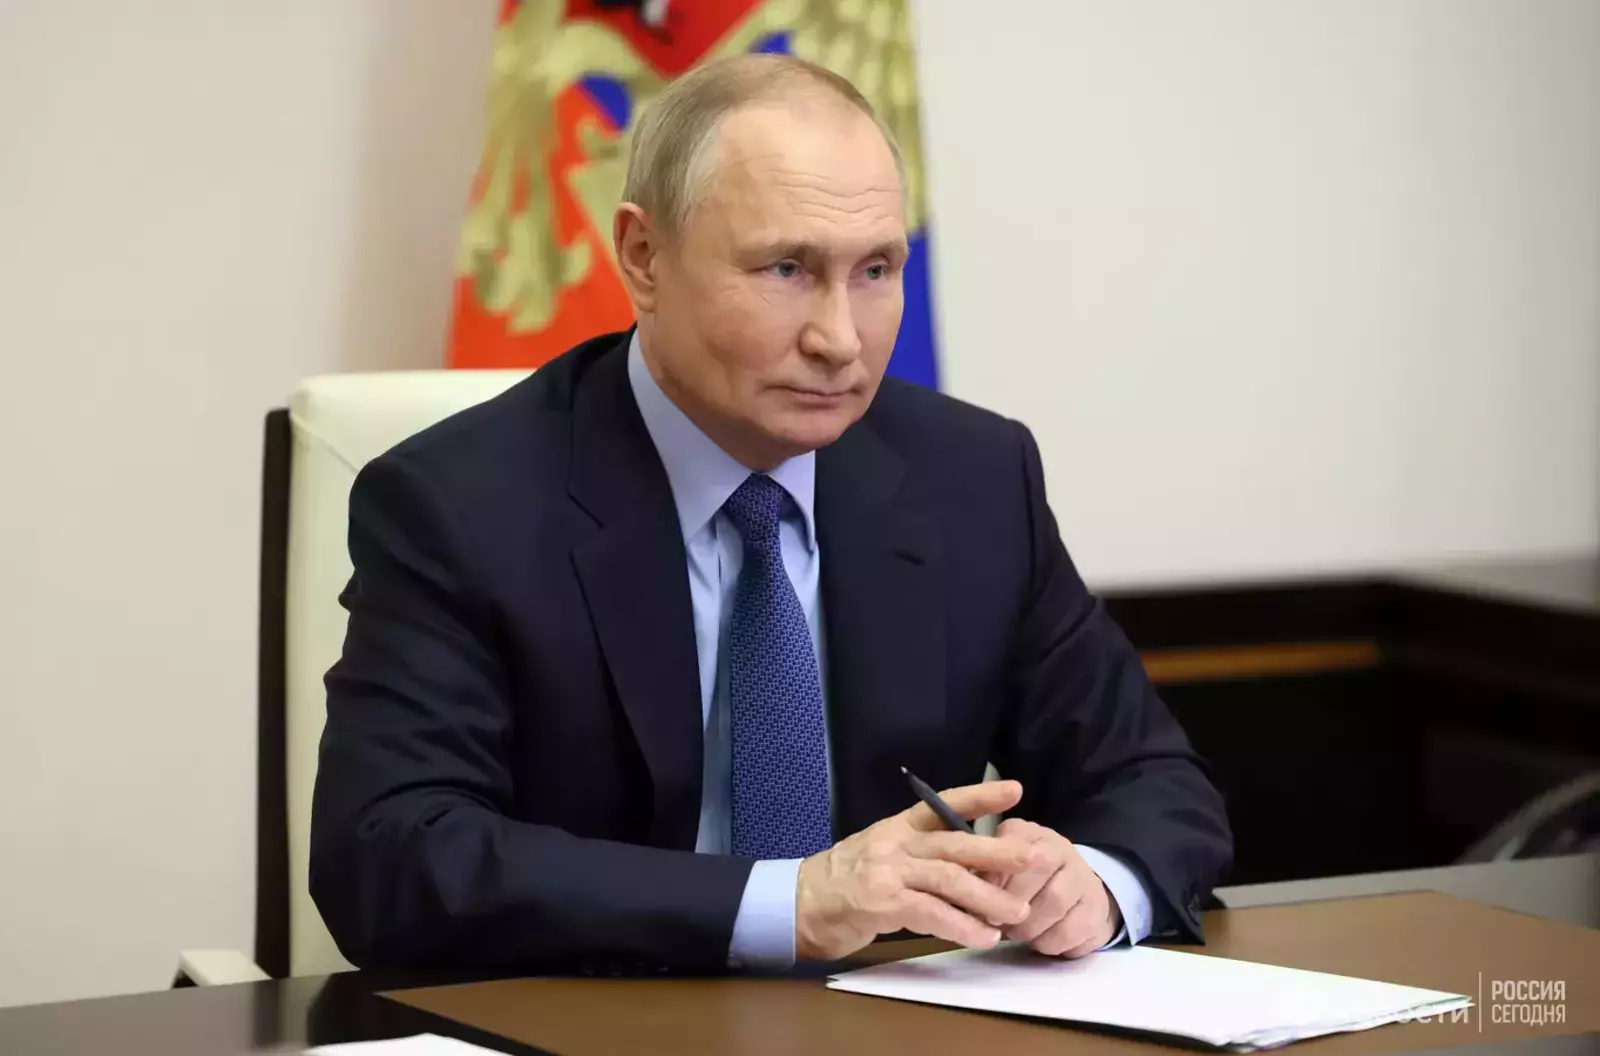 У Владимира Путина ‒ юбилей: Башкирия в высказываниях президента России